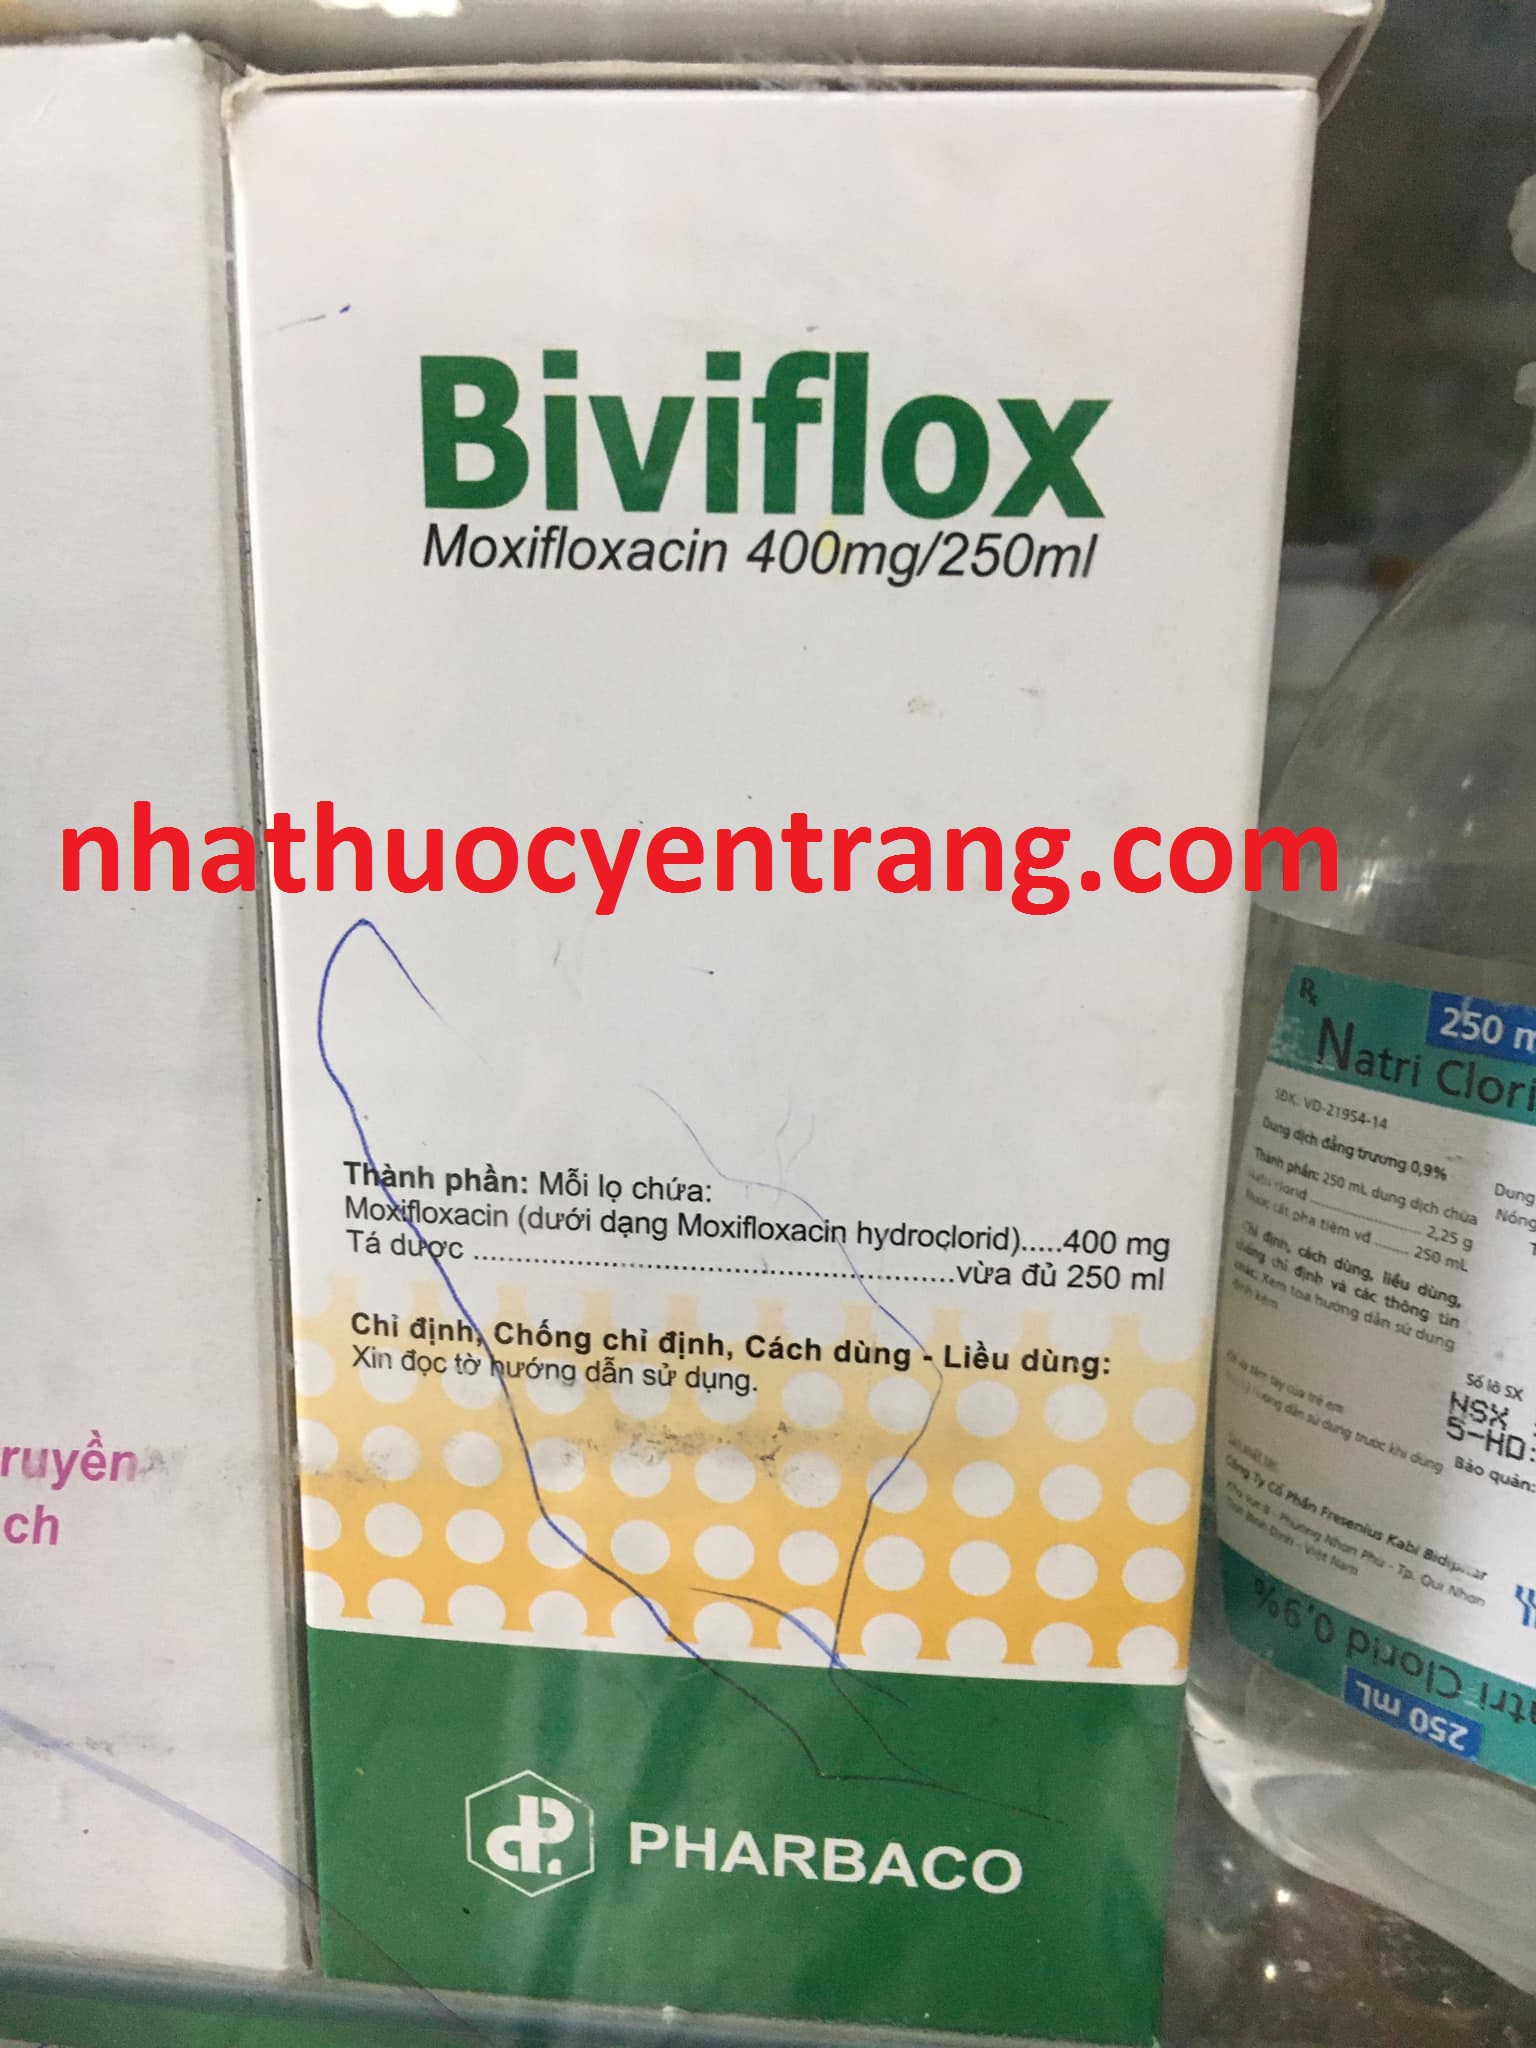 Biviflox 400mg/250ml